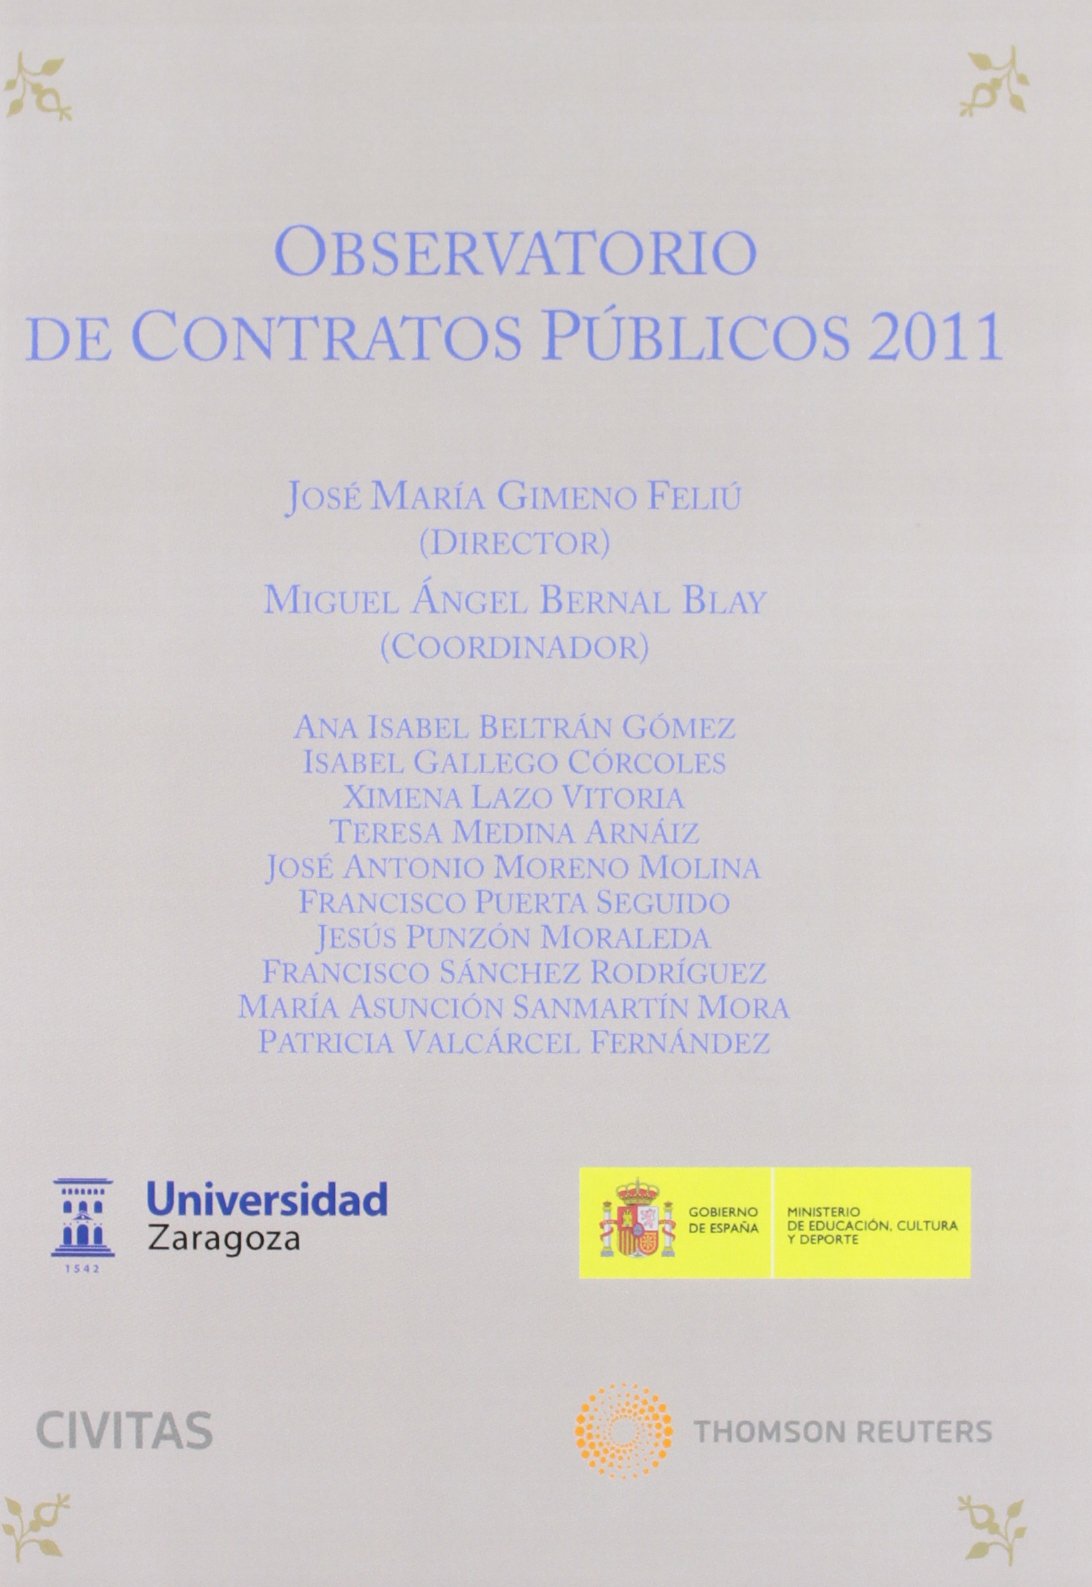 Imagen de portada del libro Observatorio de contratos públicos 2011